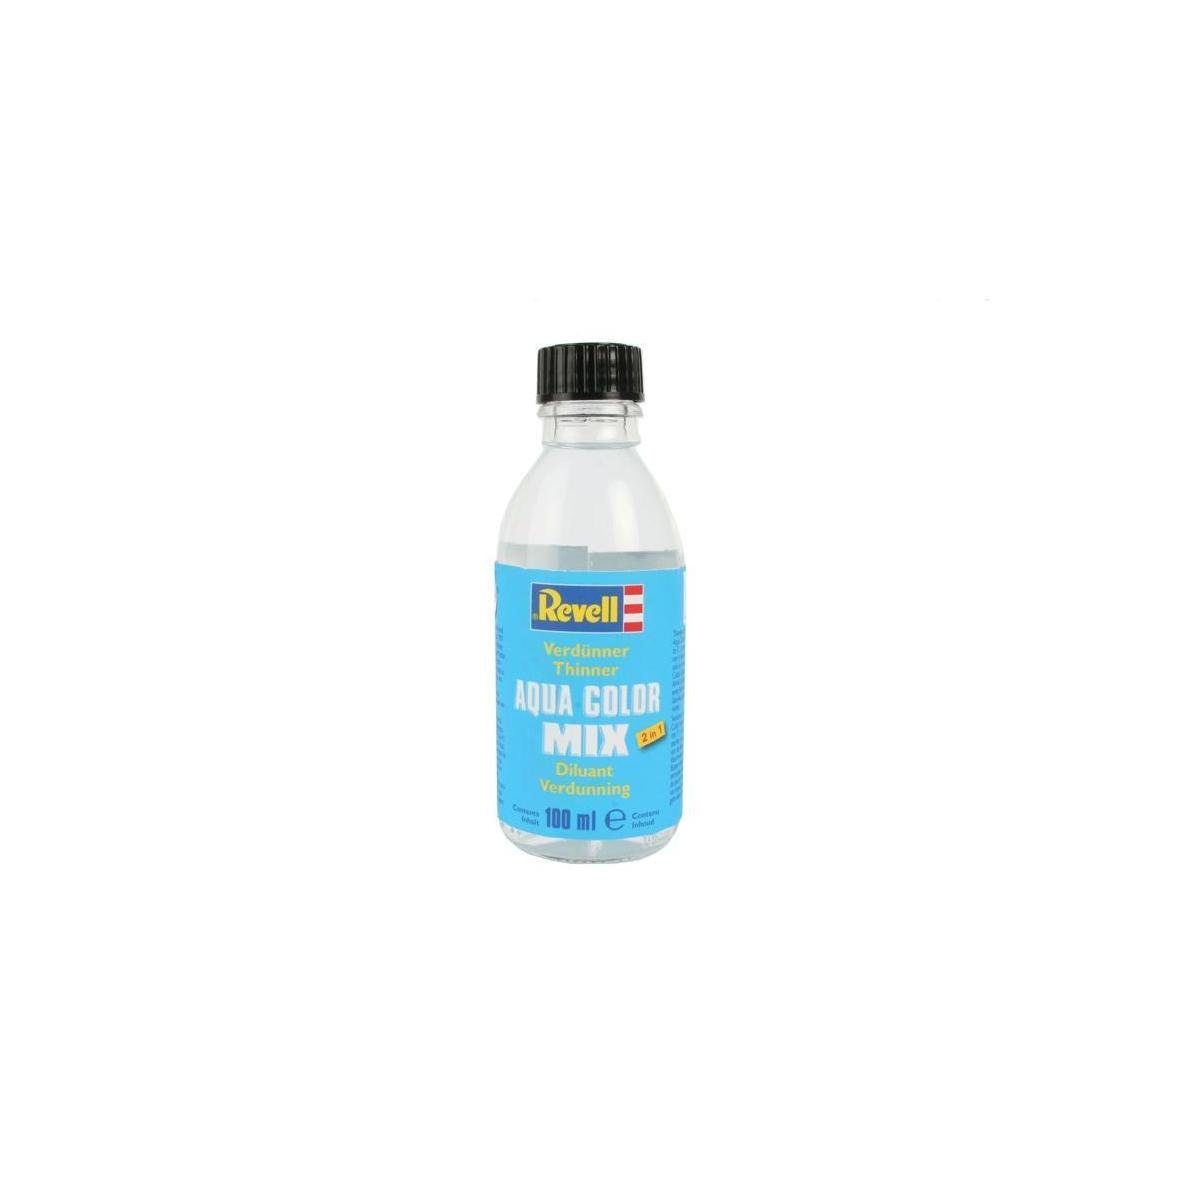 Revell® Acrylfarbe Verdünnung für AQUA COLOR, Aqua Color Mix, 100 ml